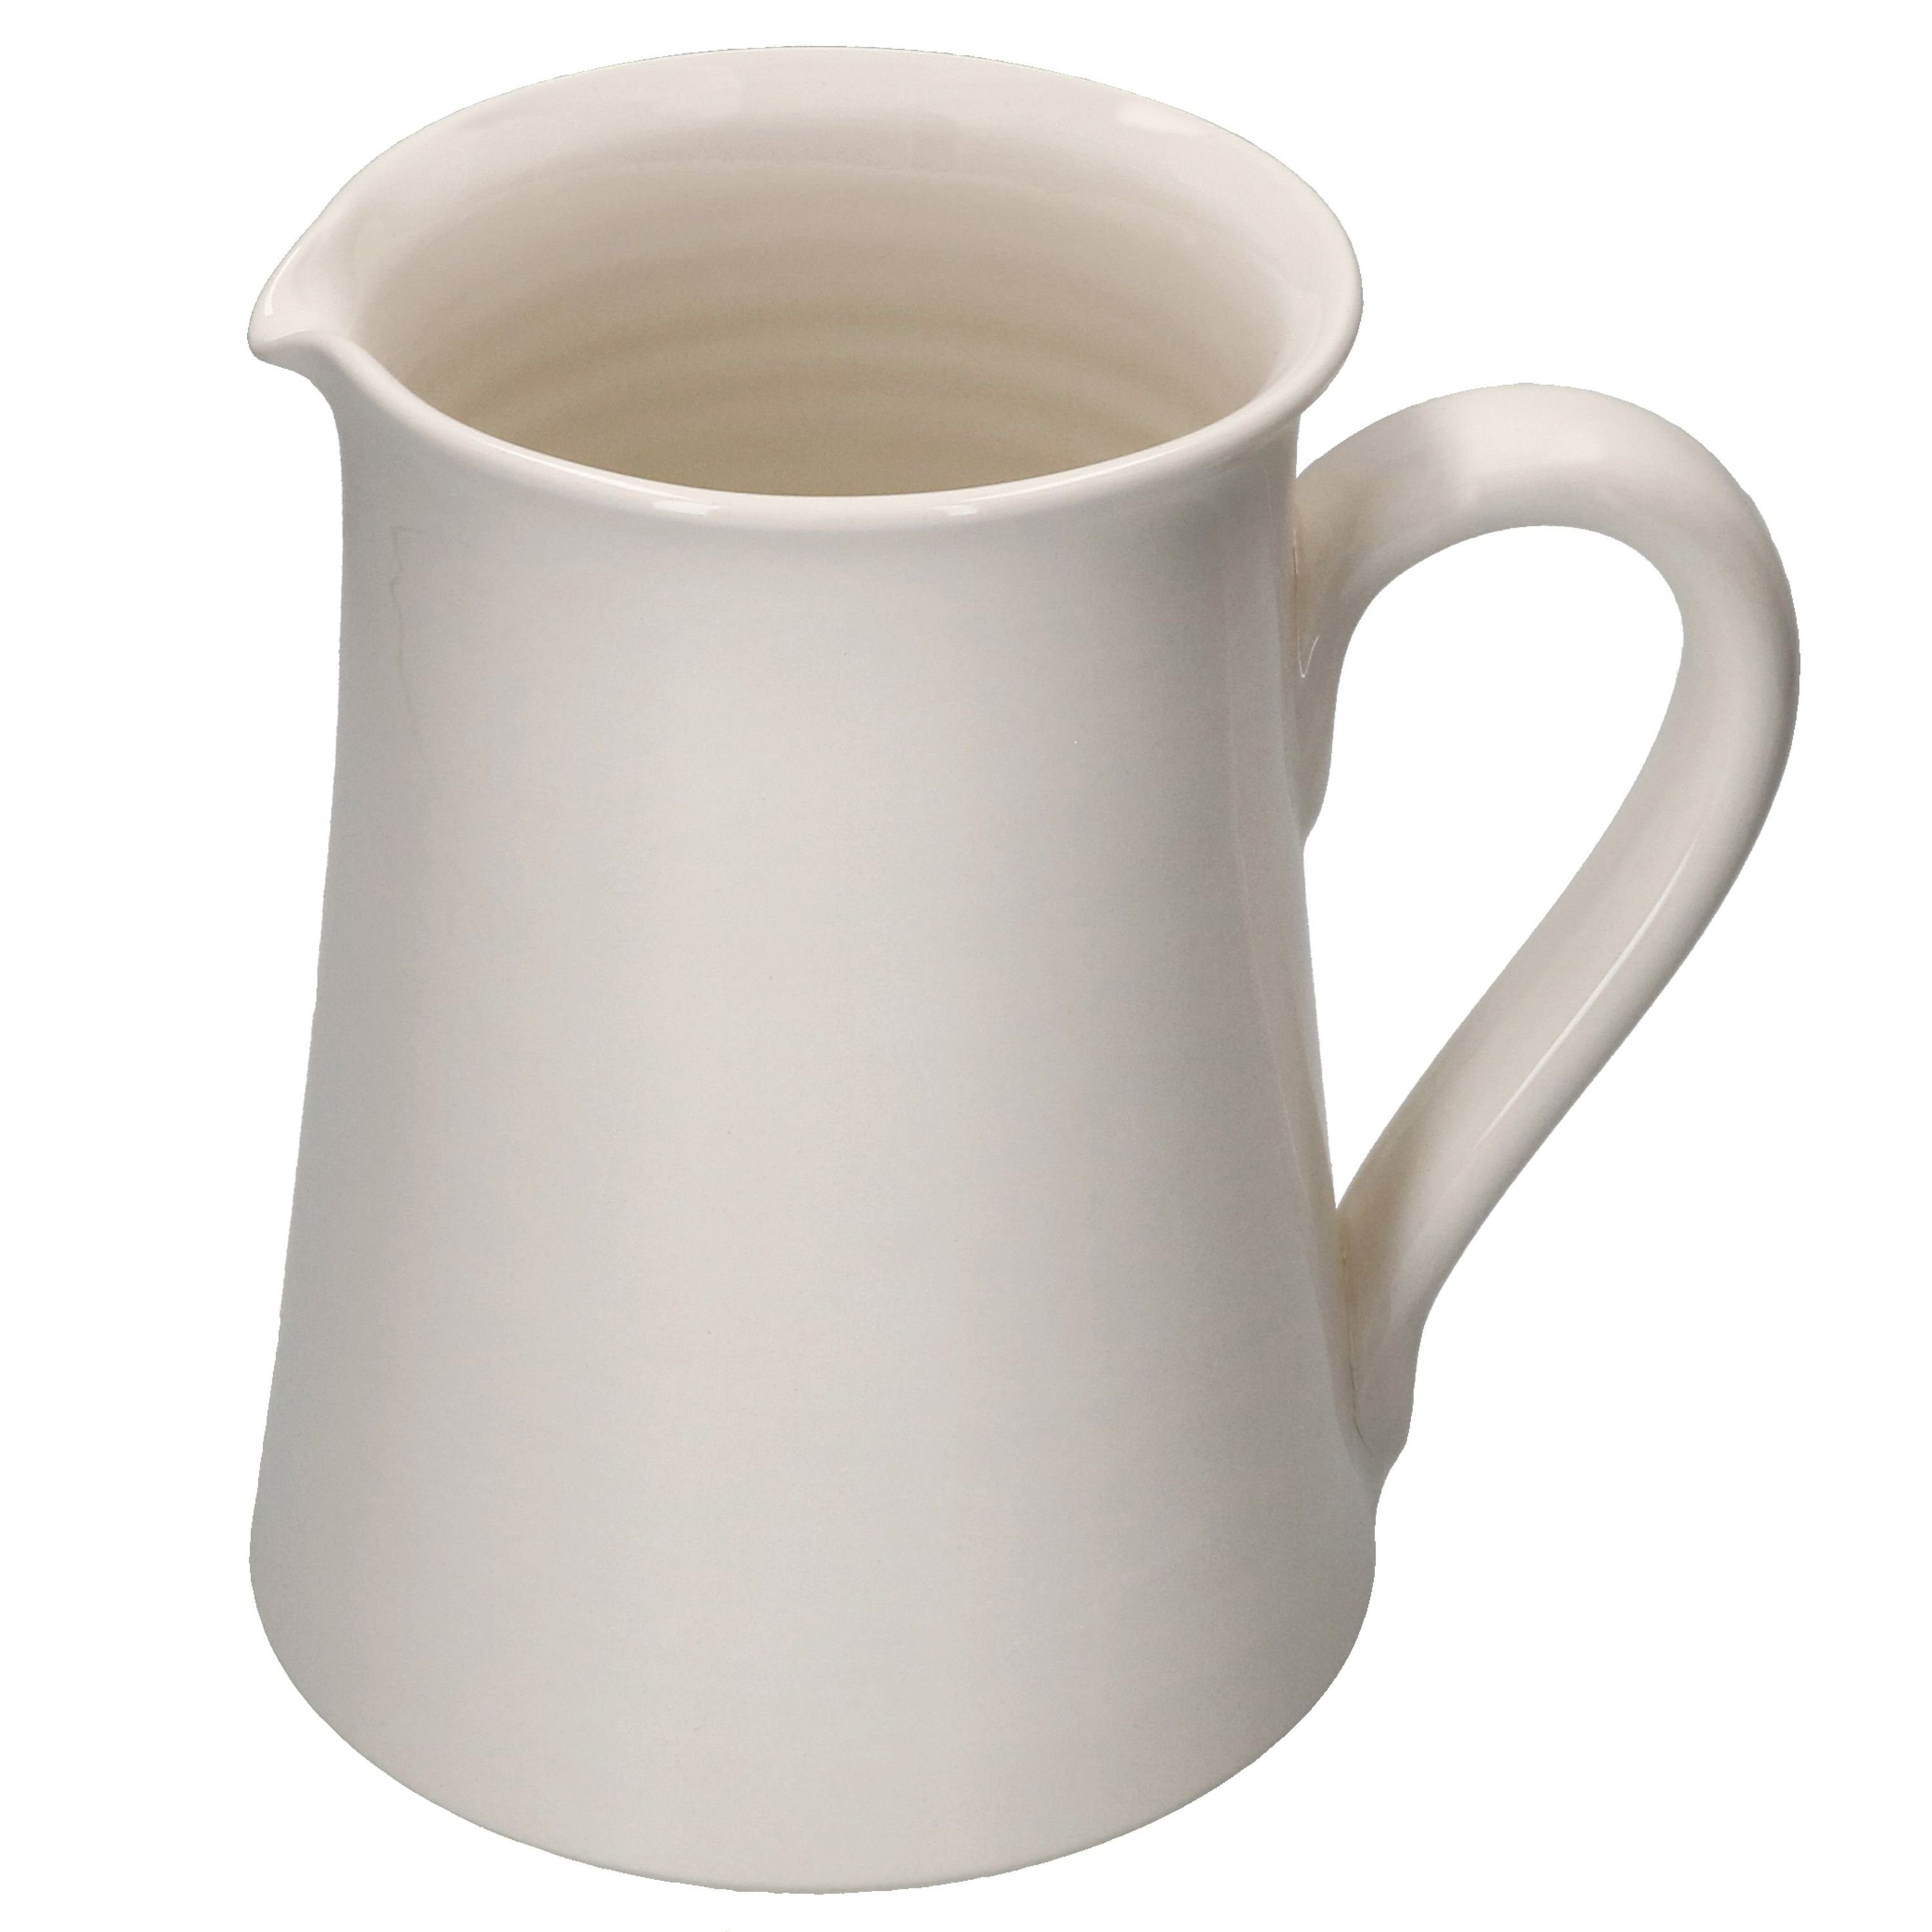 Keramik-Karaffe cremeweiß 1,6L MamboCat italienische Krug Maestro Wasserkrug Kanne